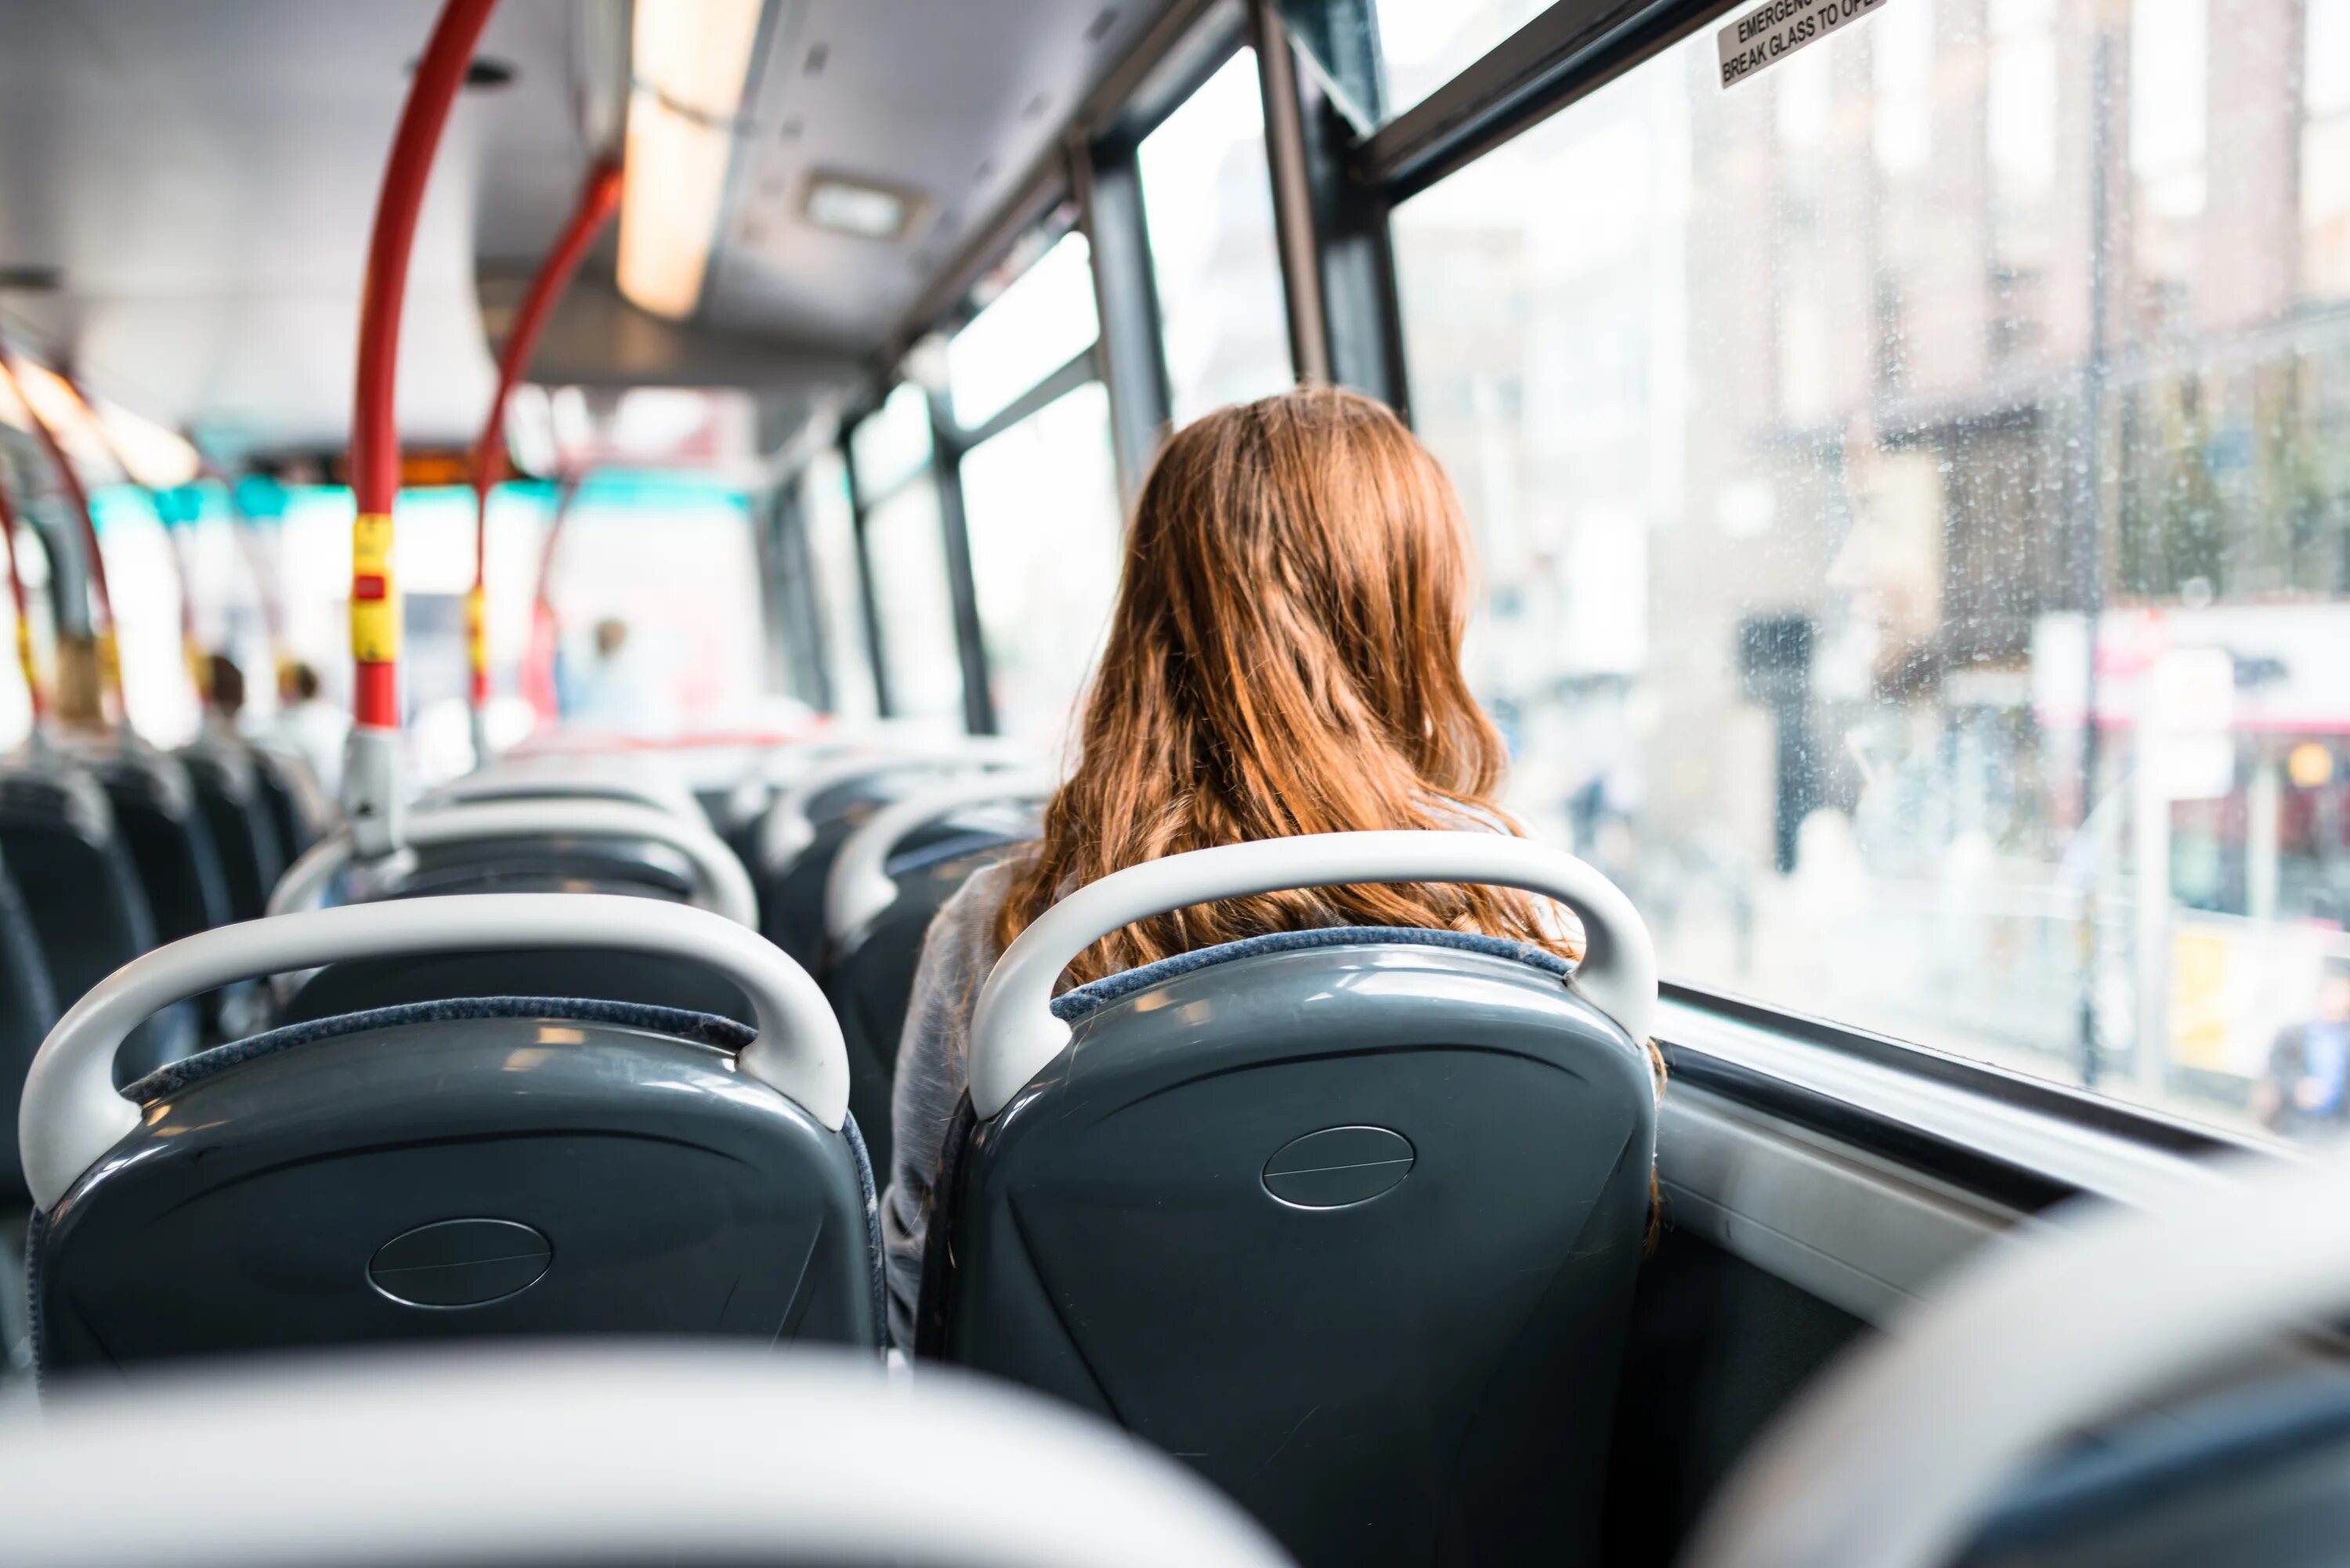 Уезжать навестить. Автобус. Девушка сидит в автобусе. Человек сидит в автобусе. Люди в трамвае.